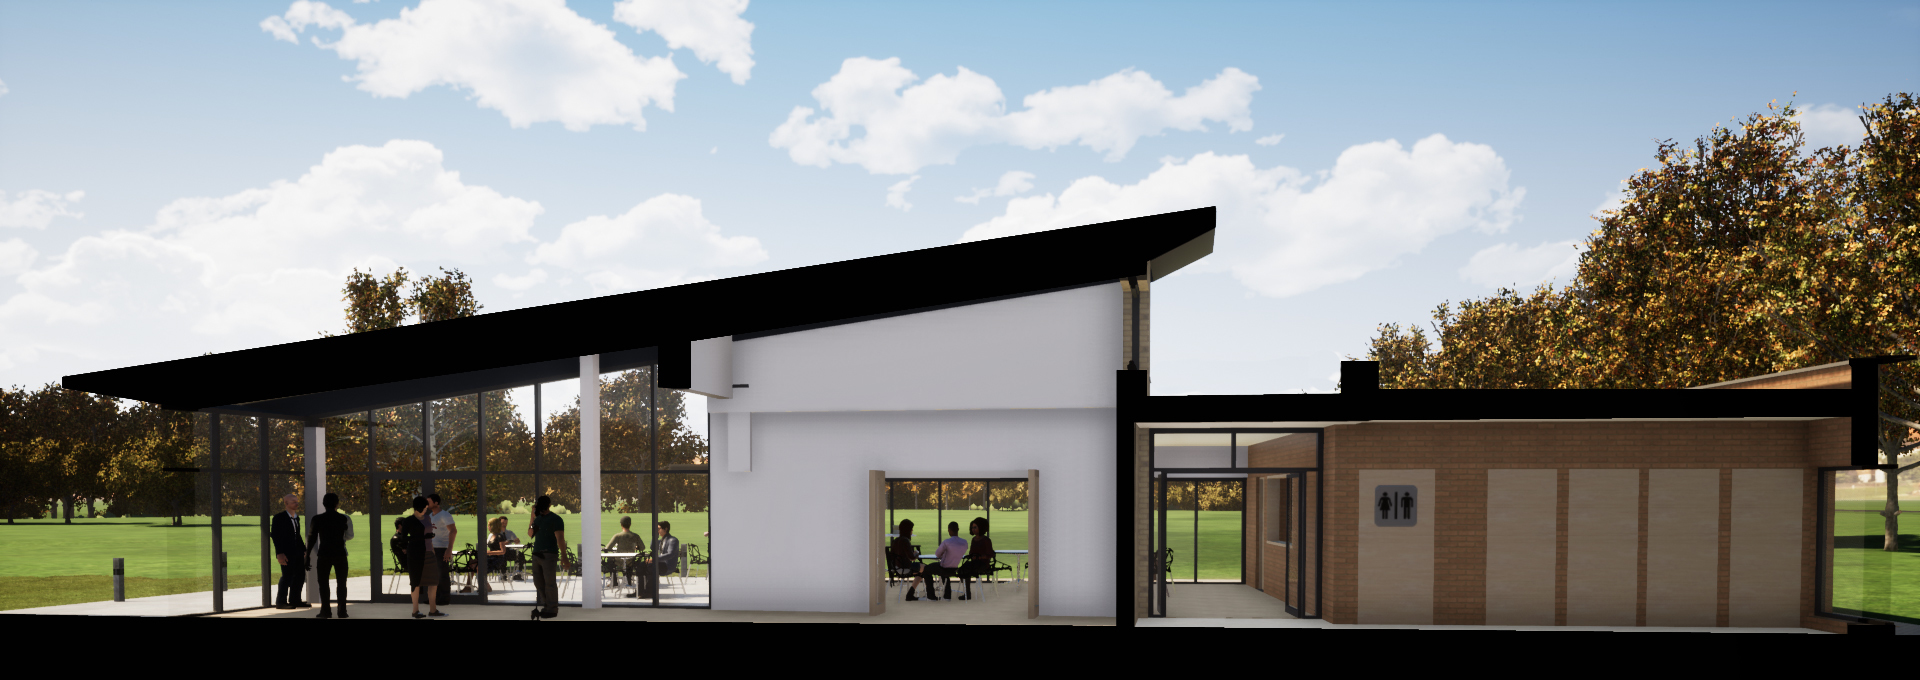 A CGI of what a rebuilt Marlborough Pavilion. Credit: St Albans District Council